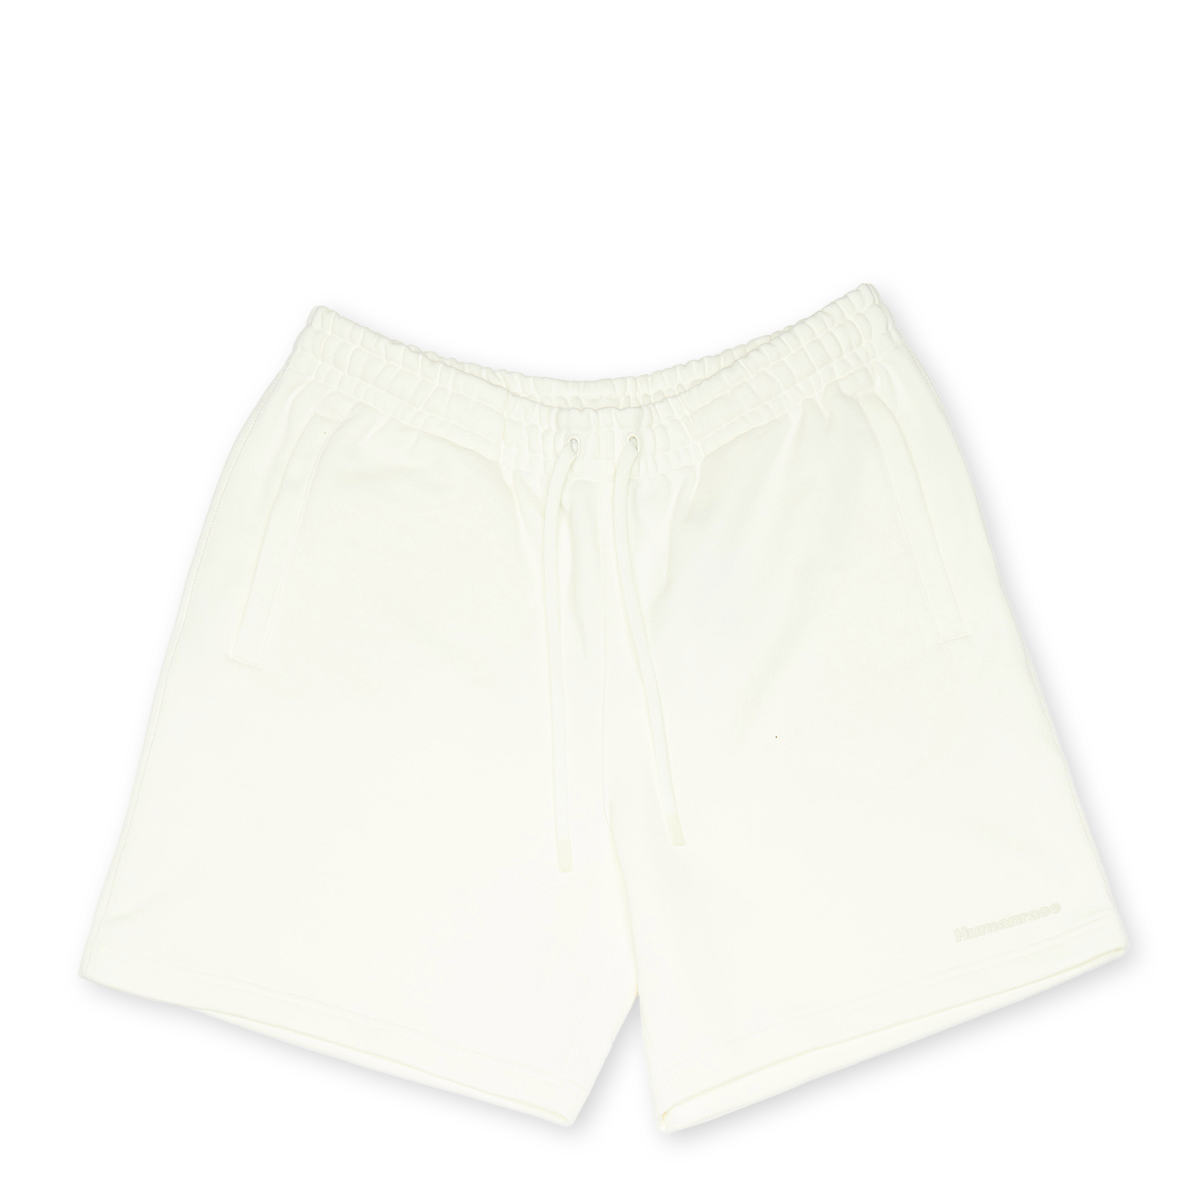 x Pharrell Williams PW Basics Shorts product